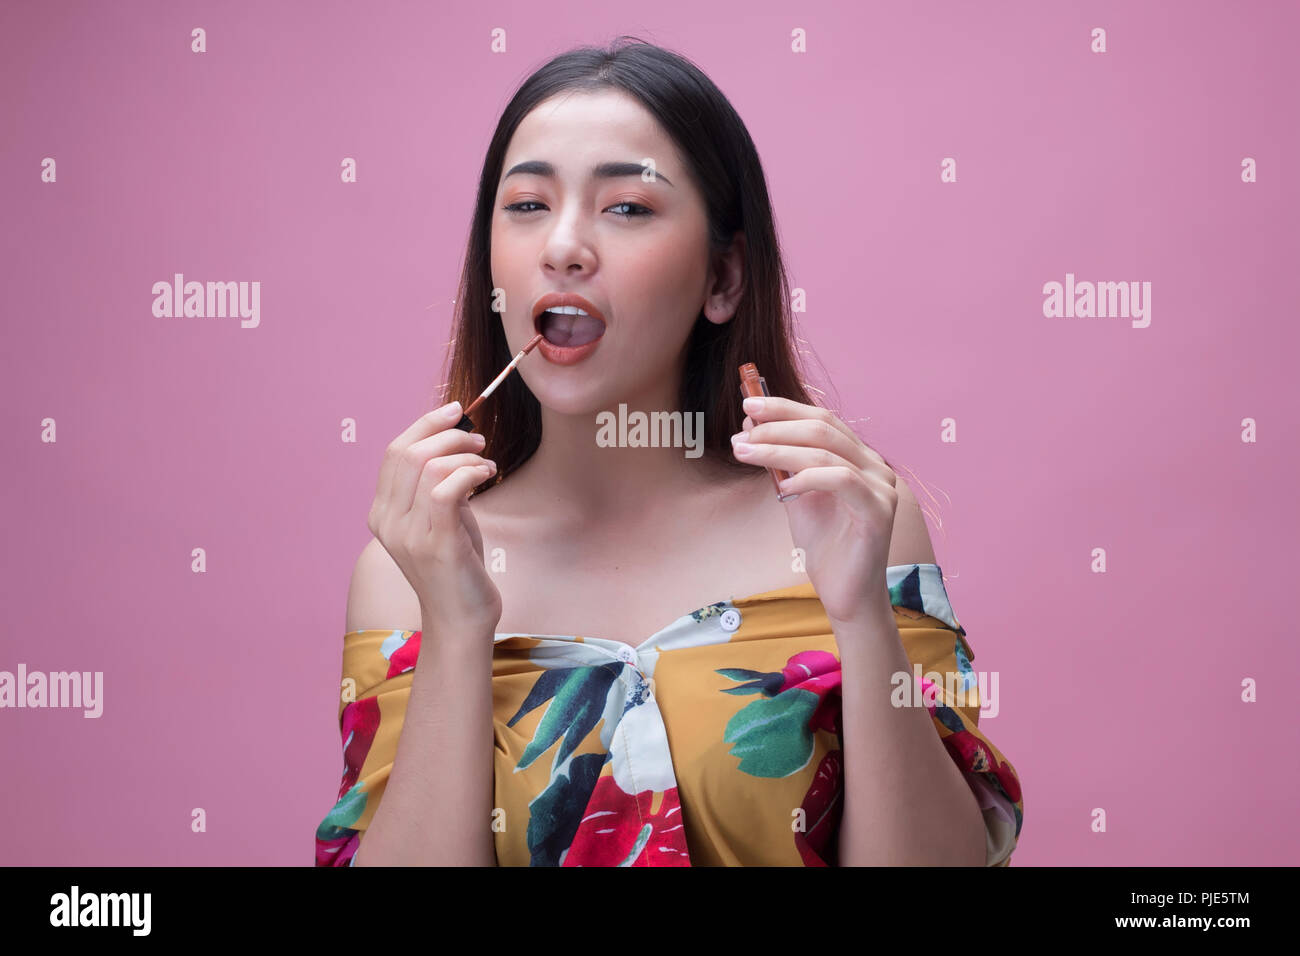 Junge asiatische Frau Anwendung Lippenstift auf ihren Lippen, auf rosa Hintergrund isoliert Stockfoto